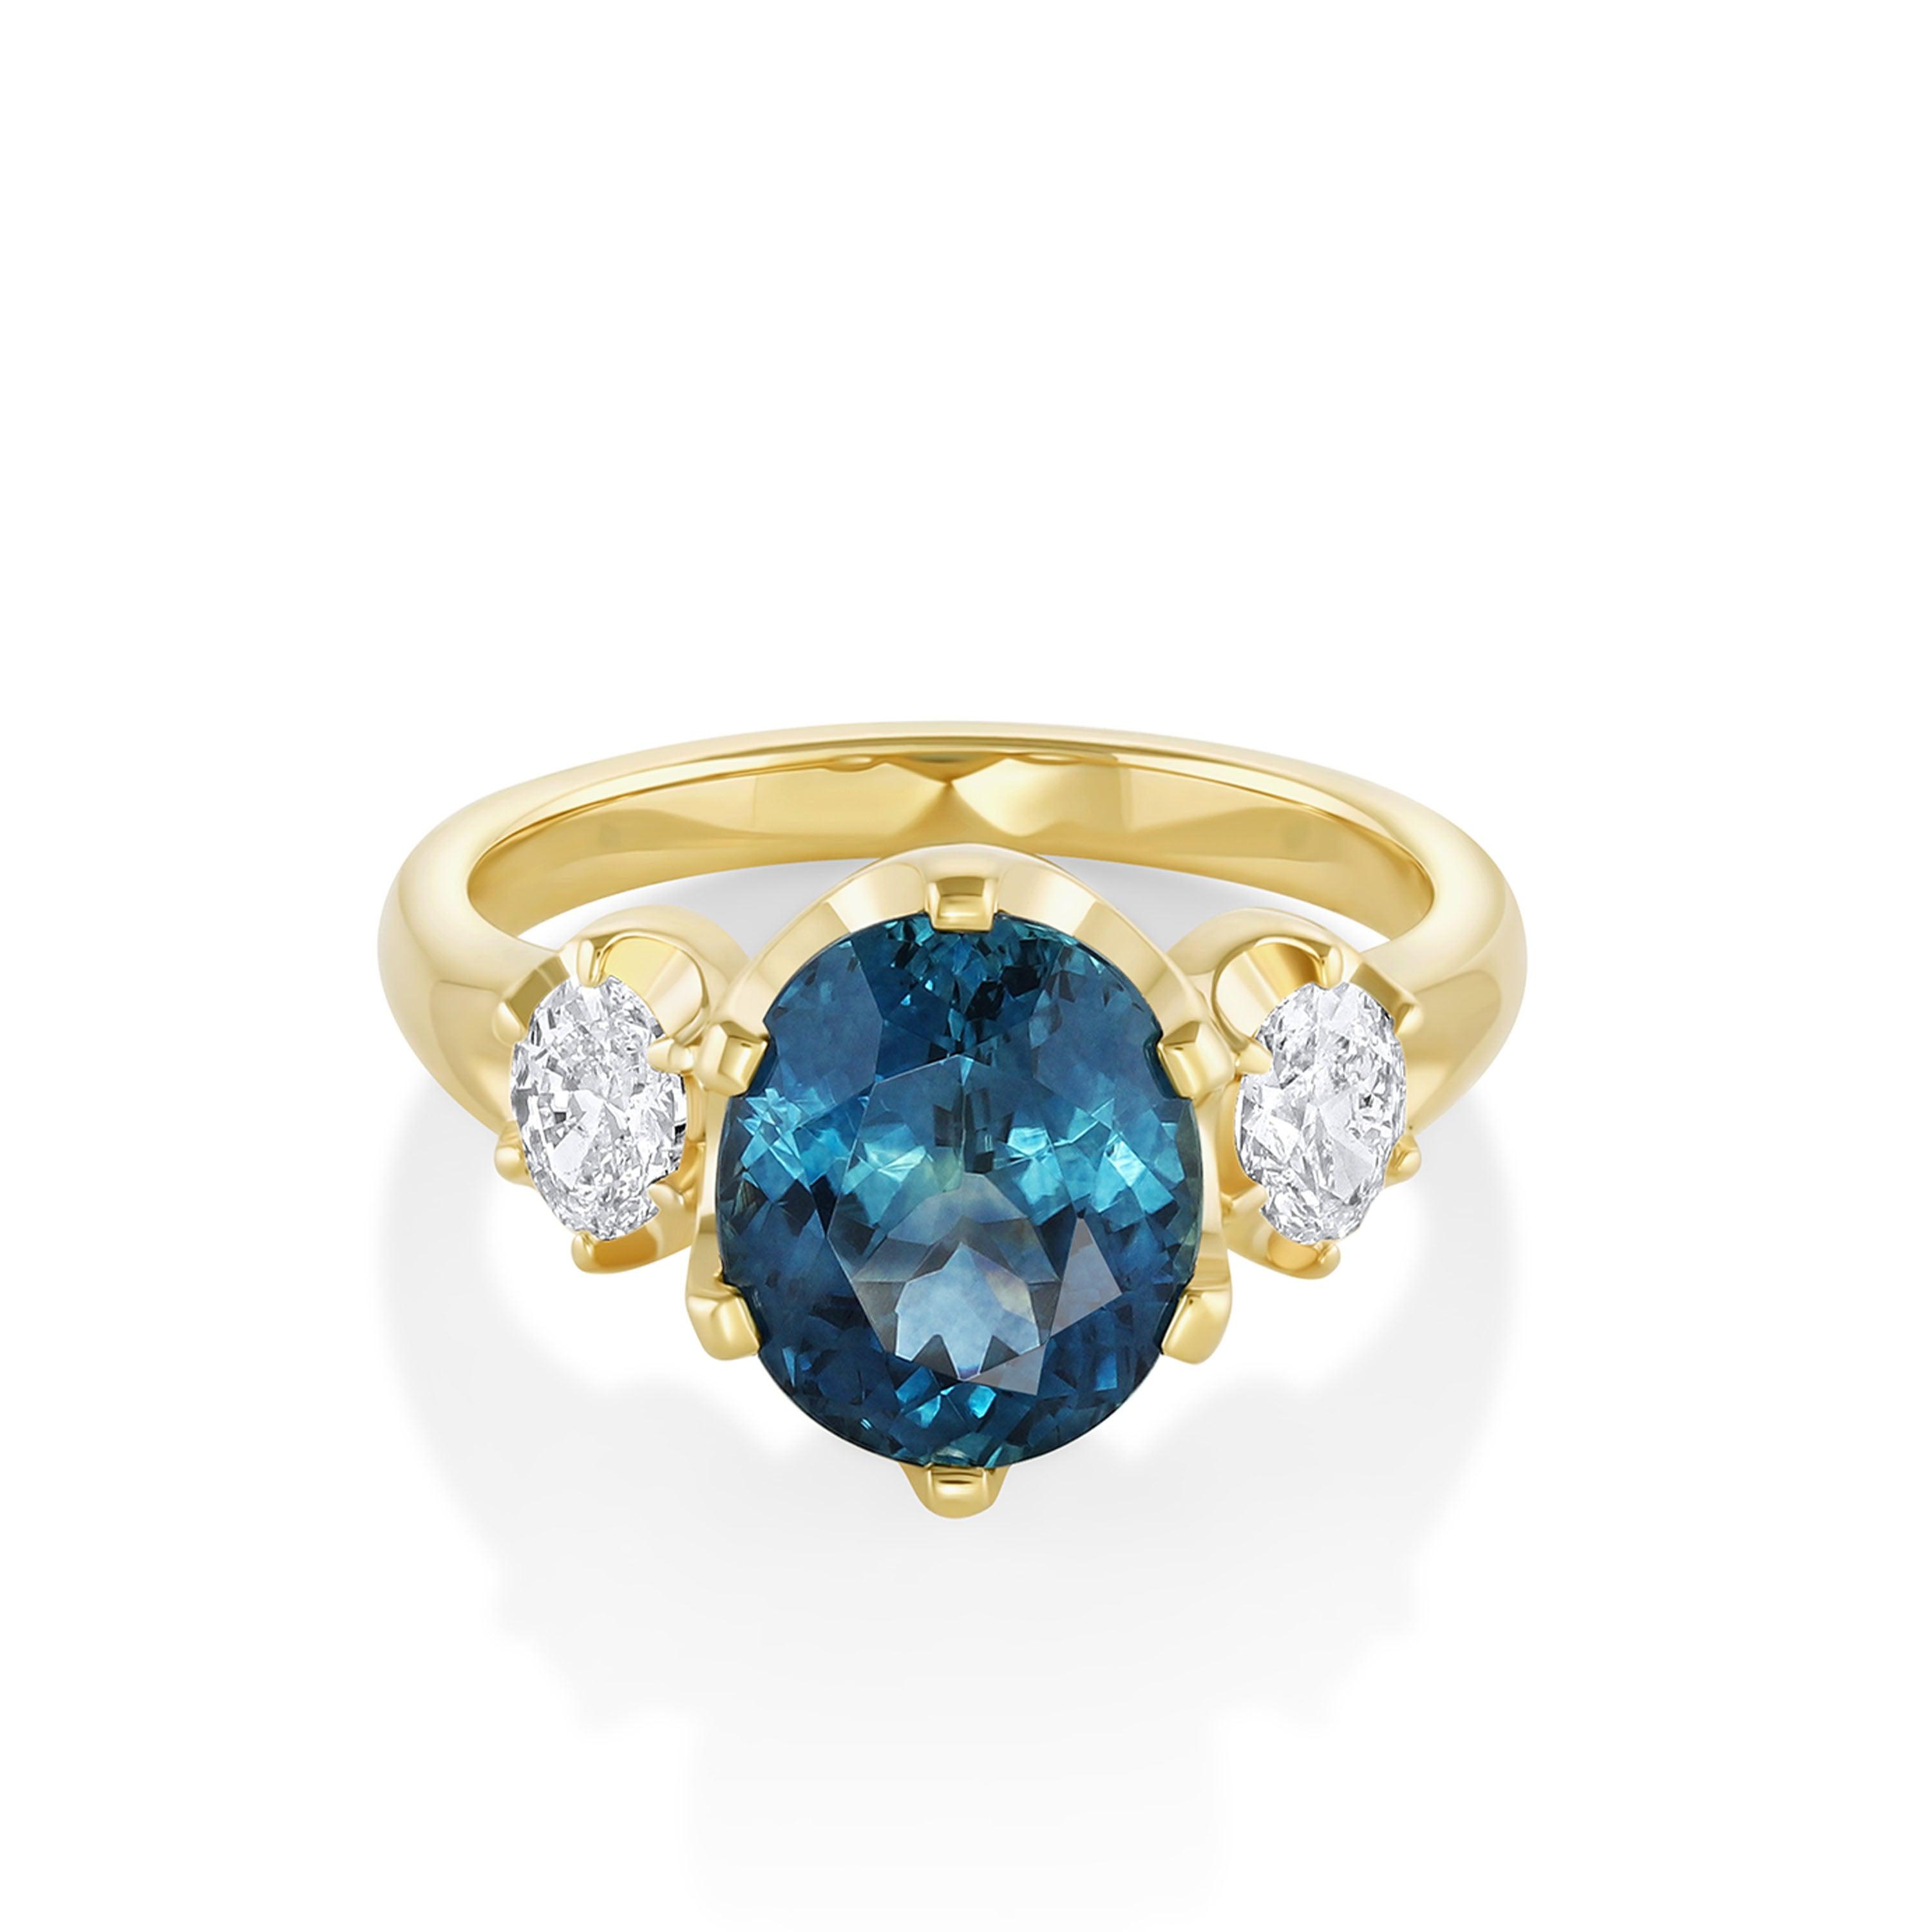 Montana sapphire three stone engagement ring